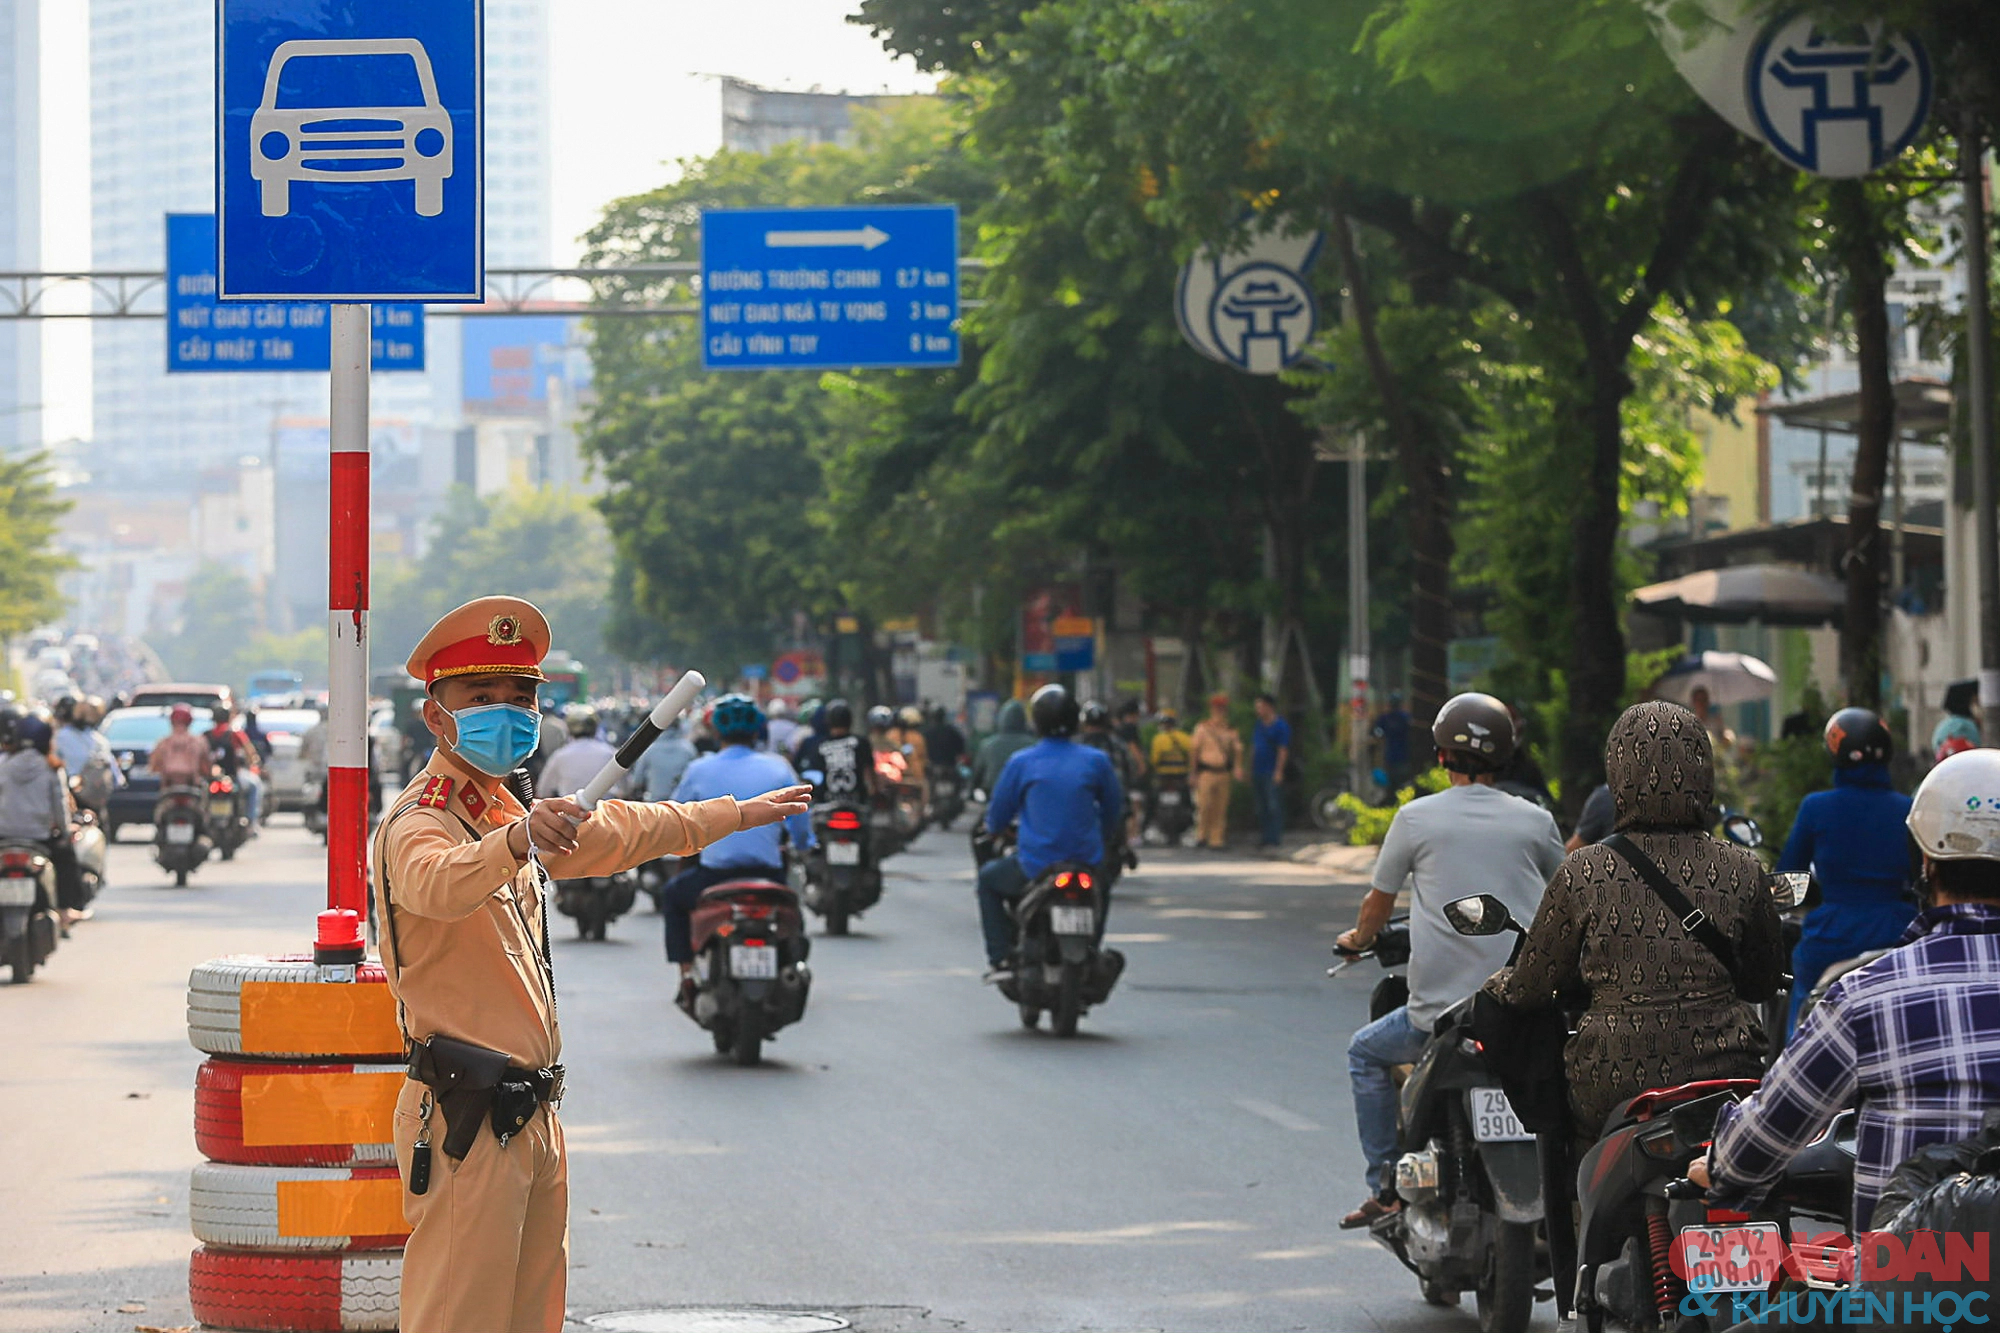 Hà Nội: Đường Nguyễn Trãi vẫn lộn xộn, xe đi sai làn chưa bị xử phạt - Ảnh 3.